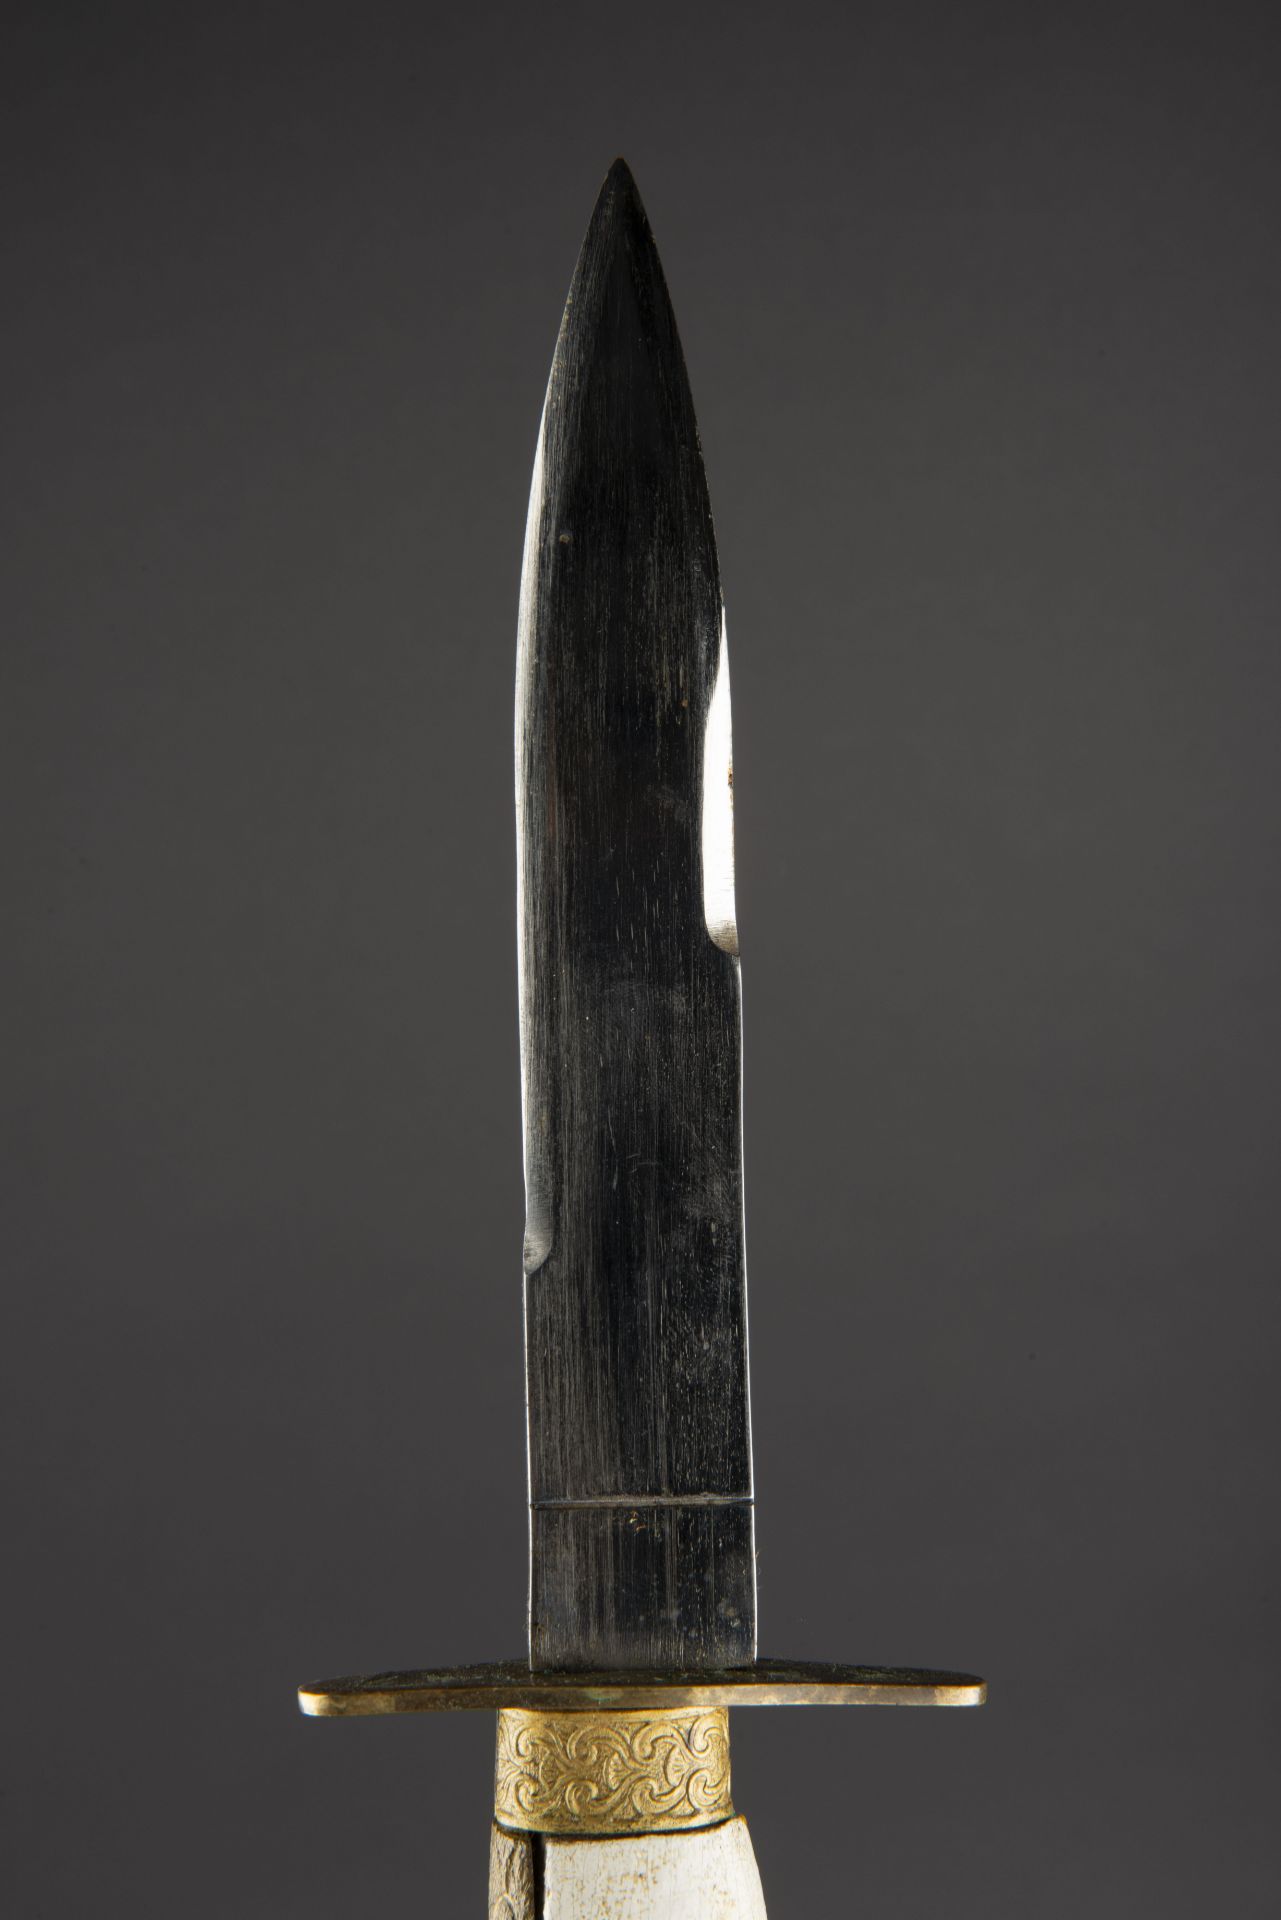 Poignard type italien. Italian type dagger. - Image 3 of 4